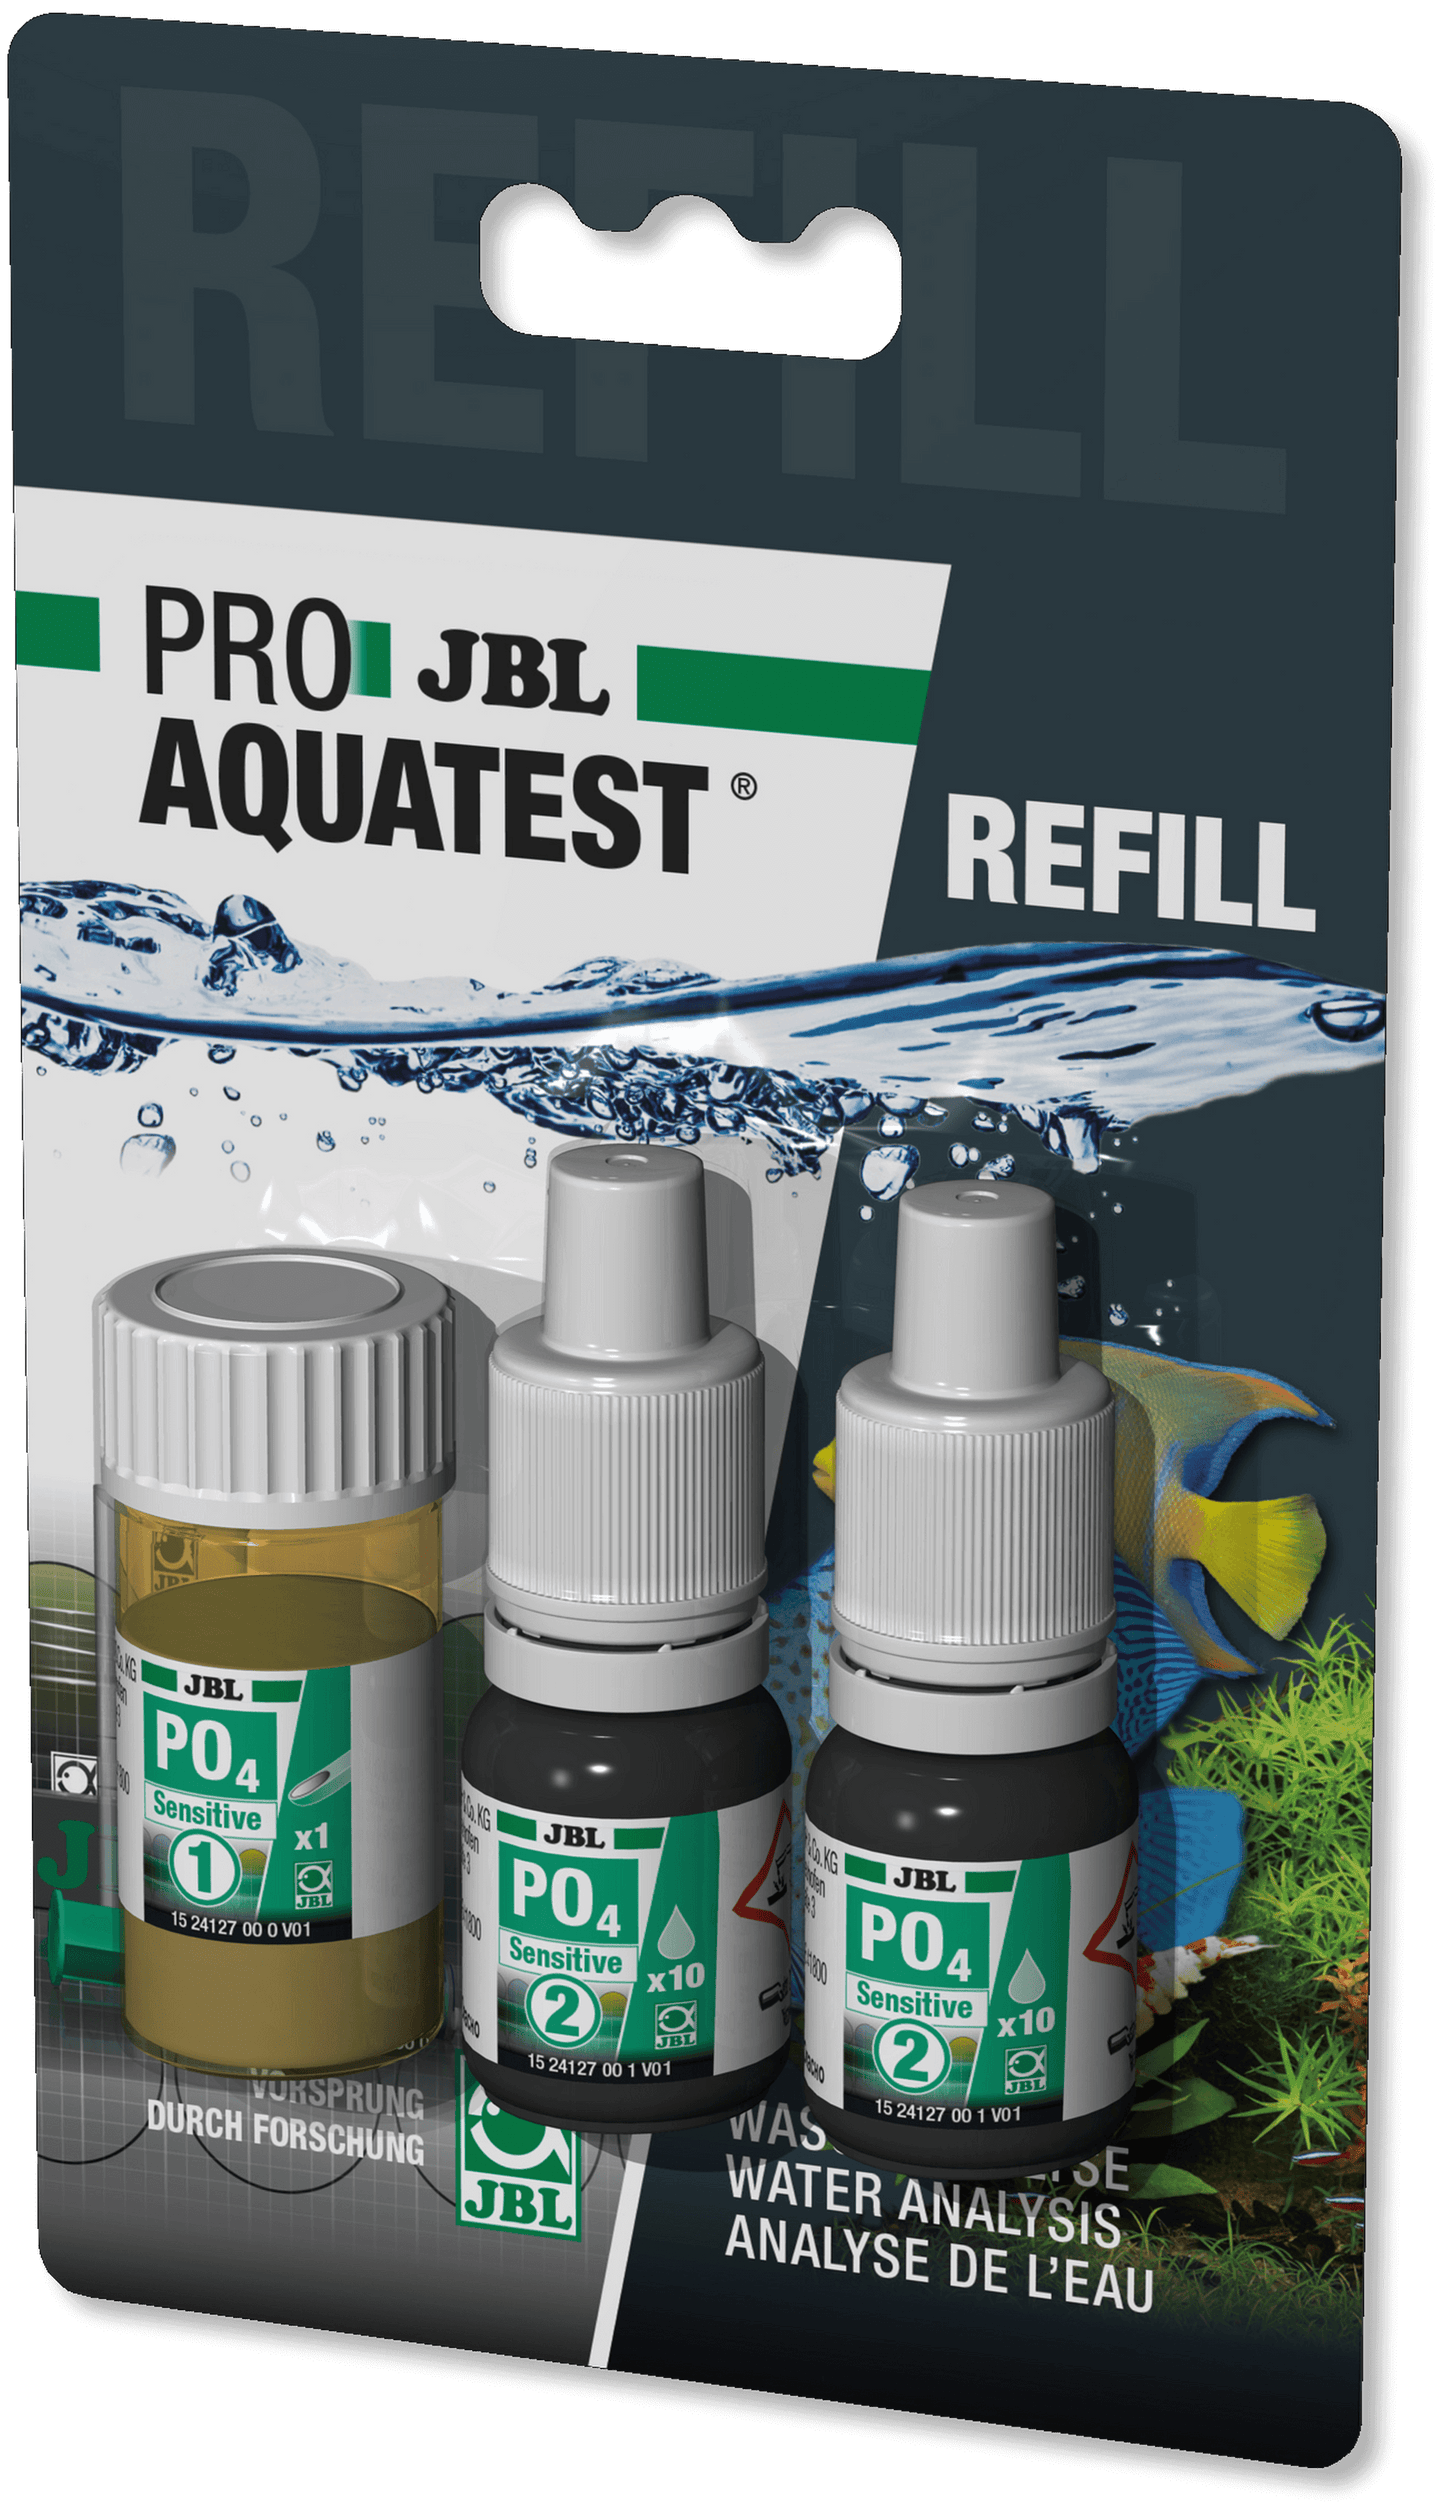 JBL PROAQUATEST PO4 Phosphat Sensitive Test rápido para determinar la concentración de fosfatos en acuarios marinos y de agua dulce y en estanques